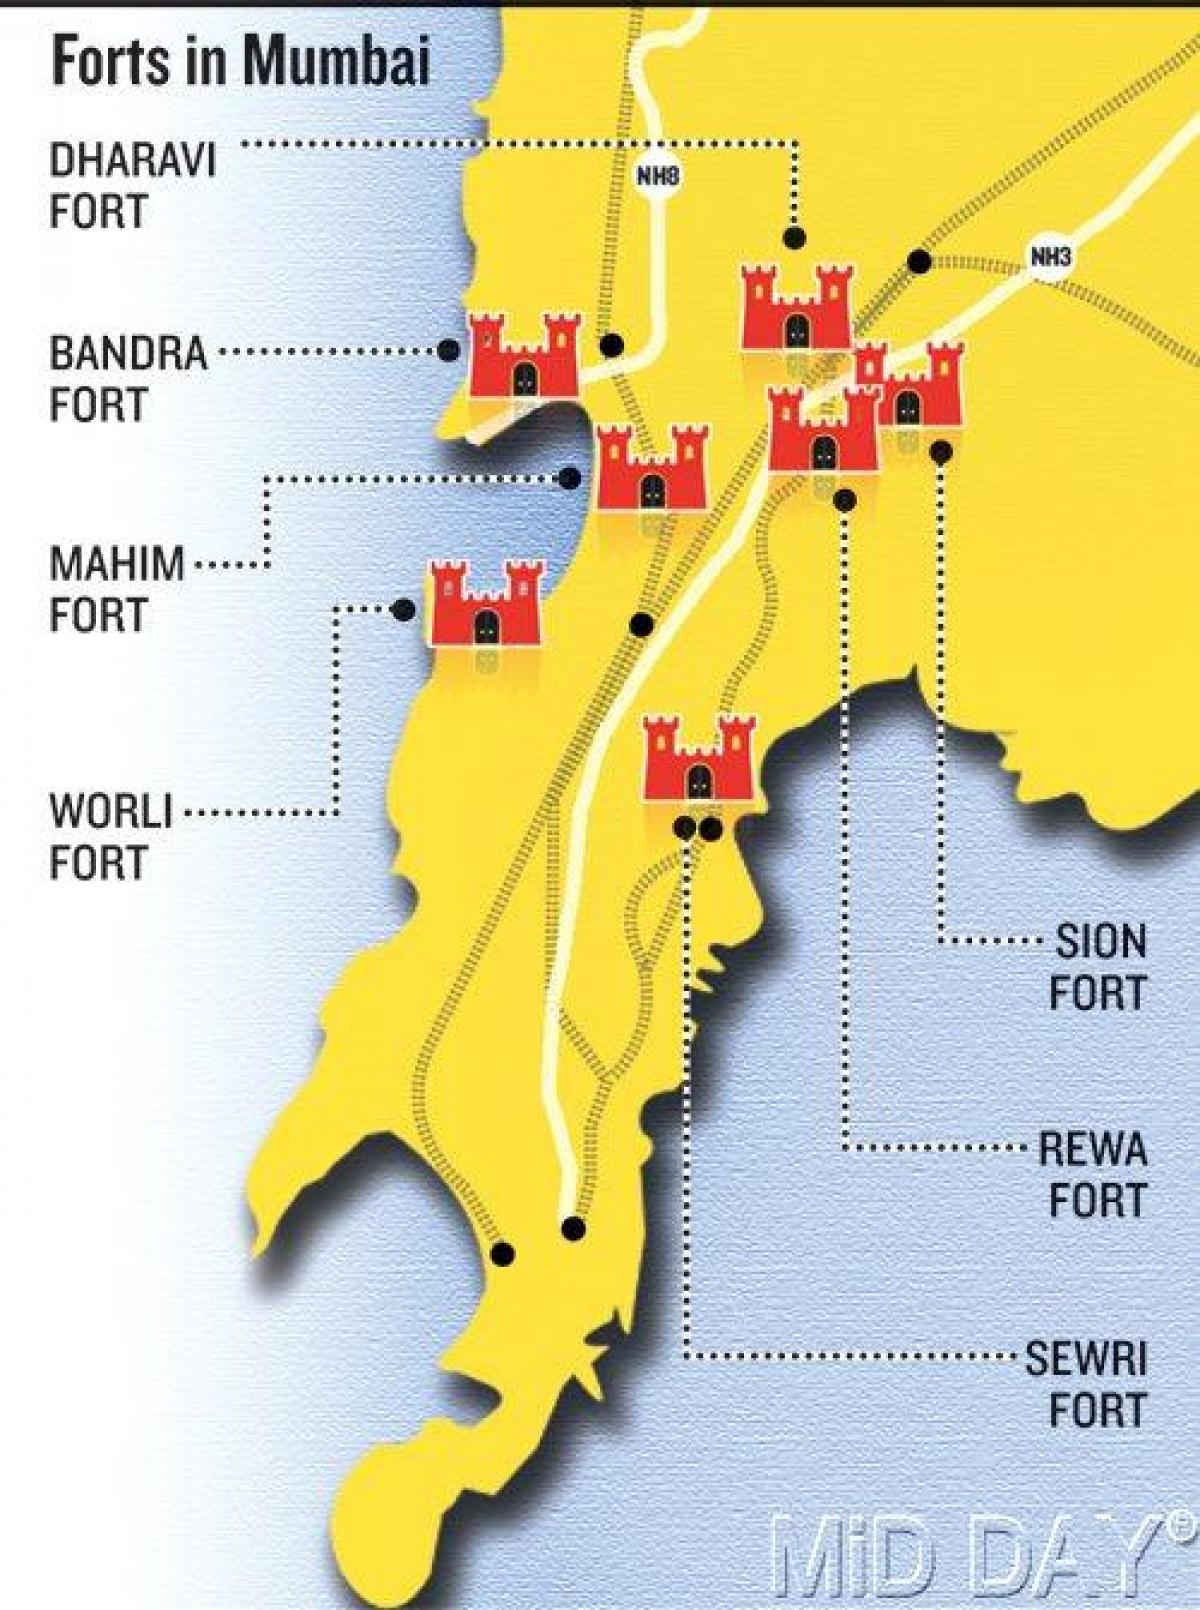 Mumbai fort peta kawasan